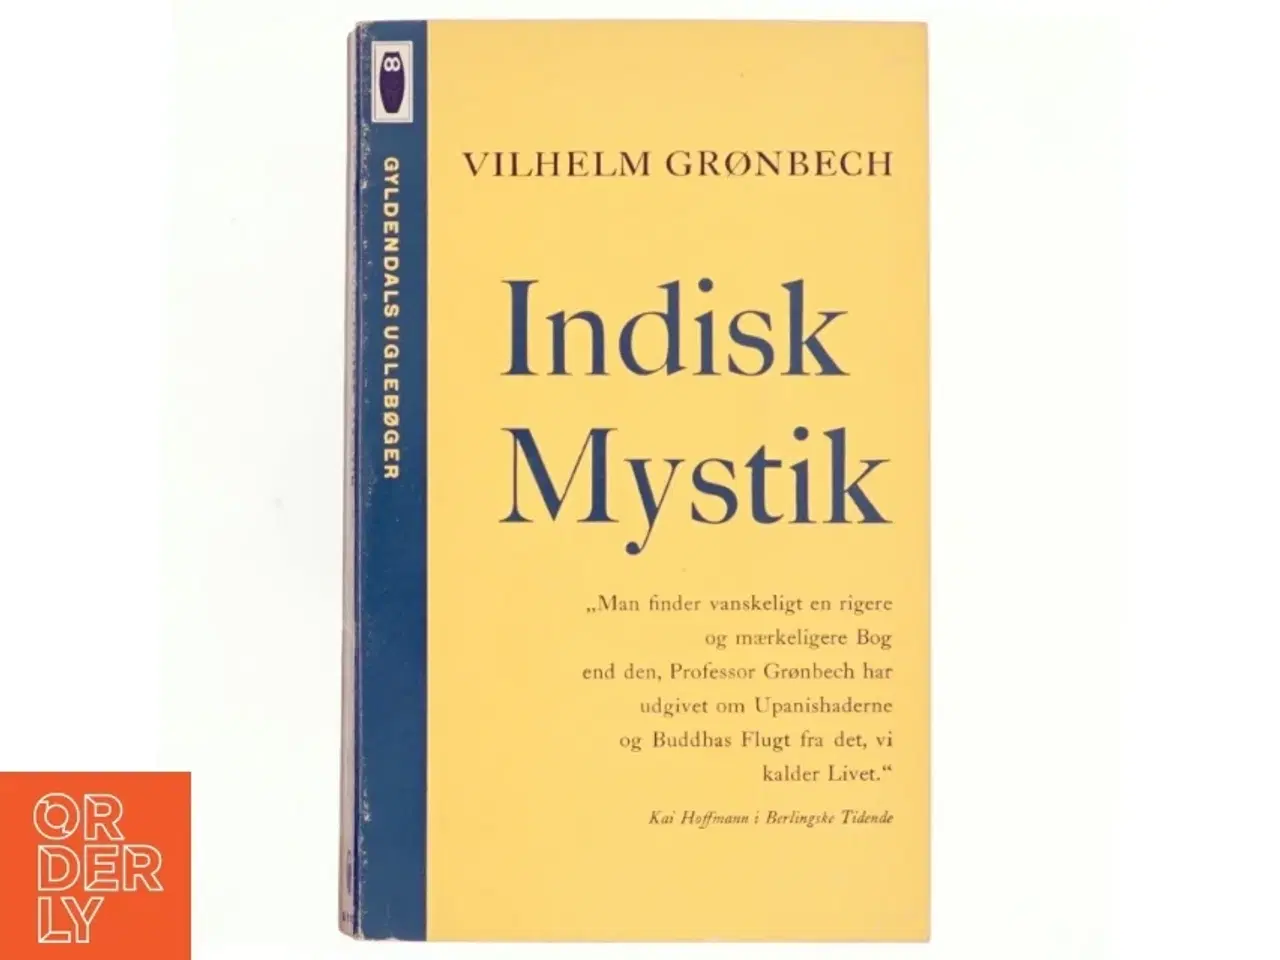 Billede 1 - Indisk mystik af Vilhelm Grønbech (bog)